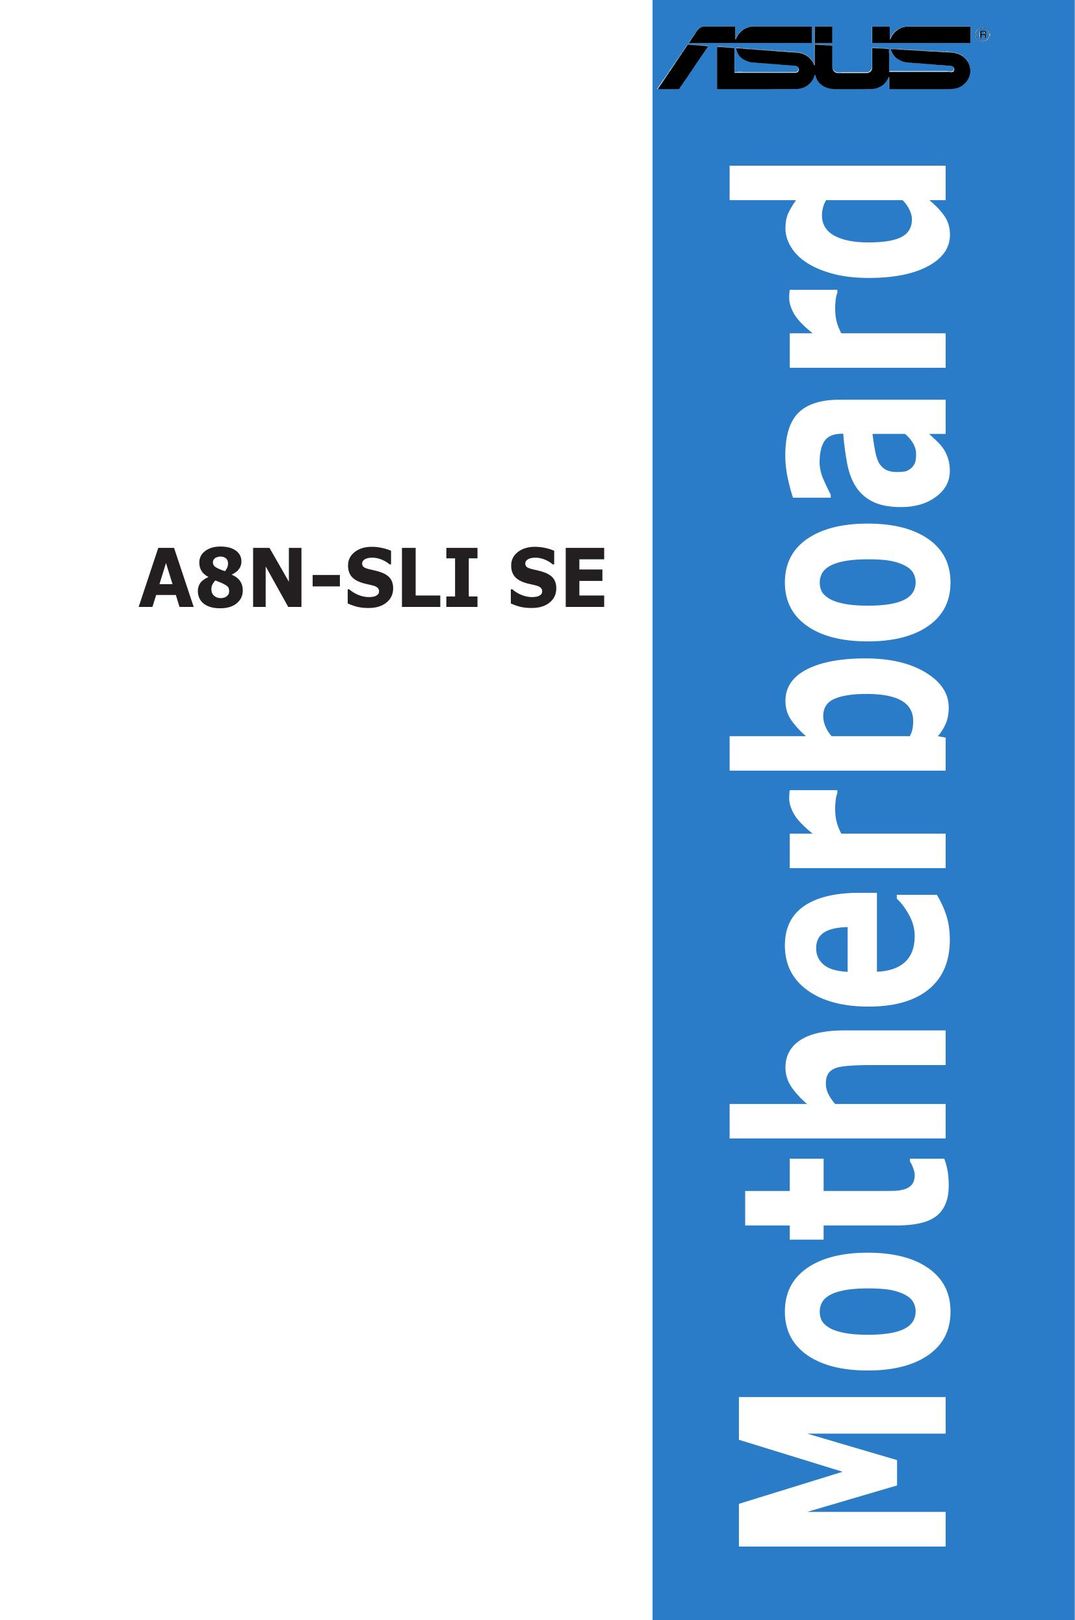 Asus A8N-SLI SE Personal Computer User Manual